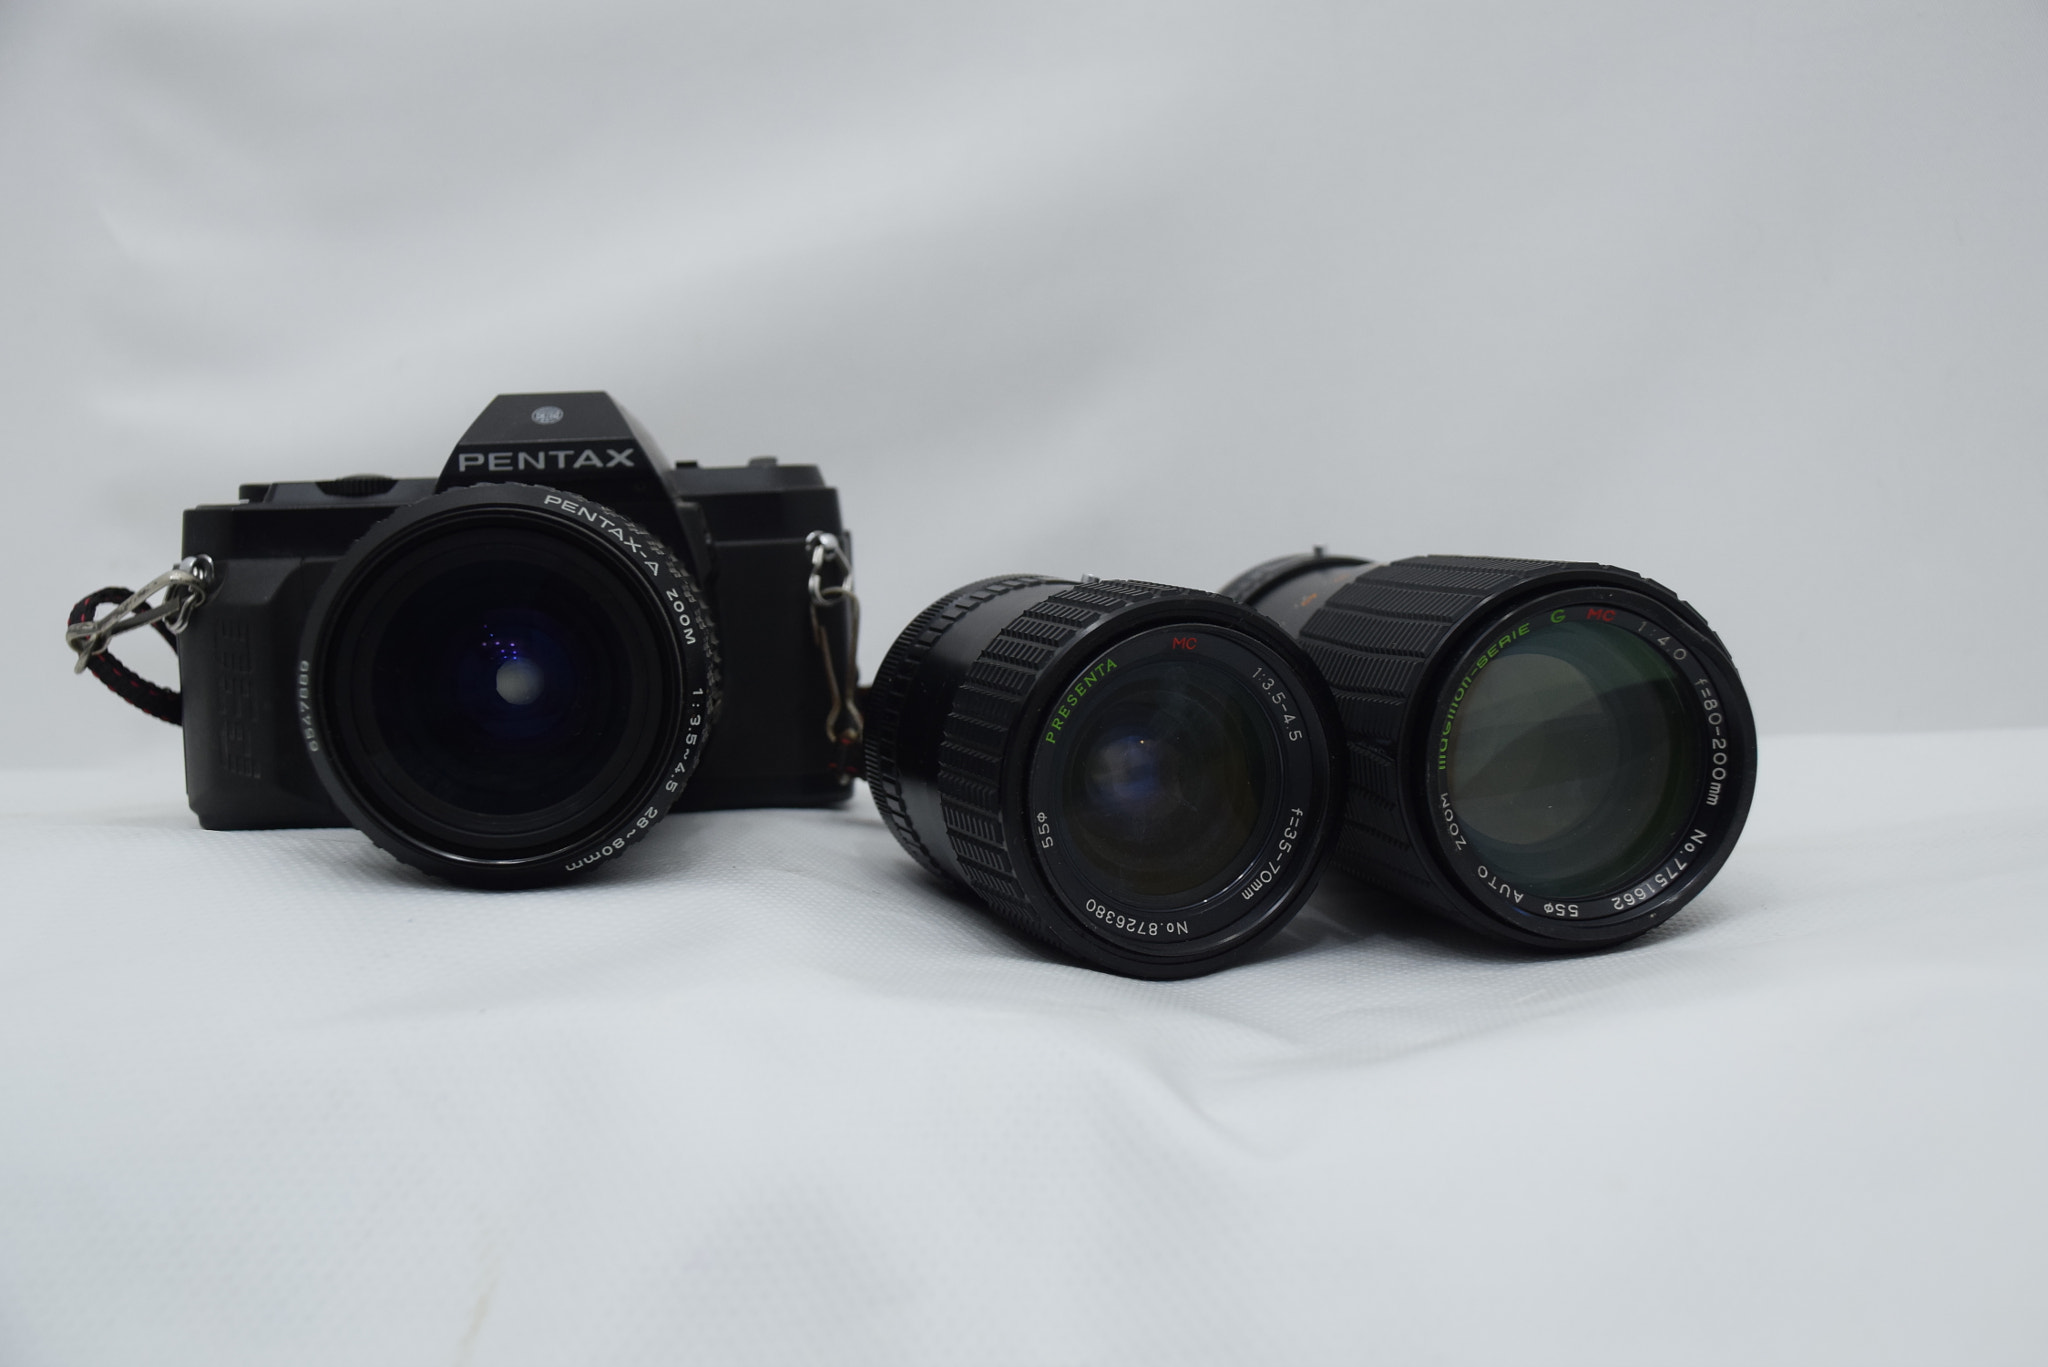 Nikon D5300 + Nikon AF-S DX Nikkor 18-135mm F3.5-5.6G ED-IF sample photo. Pentax photography